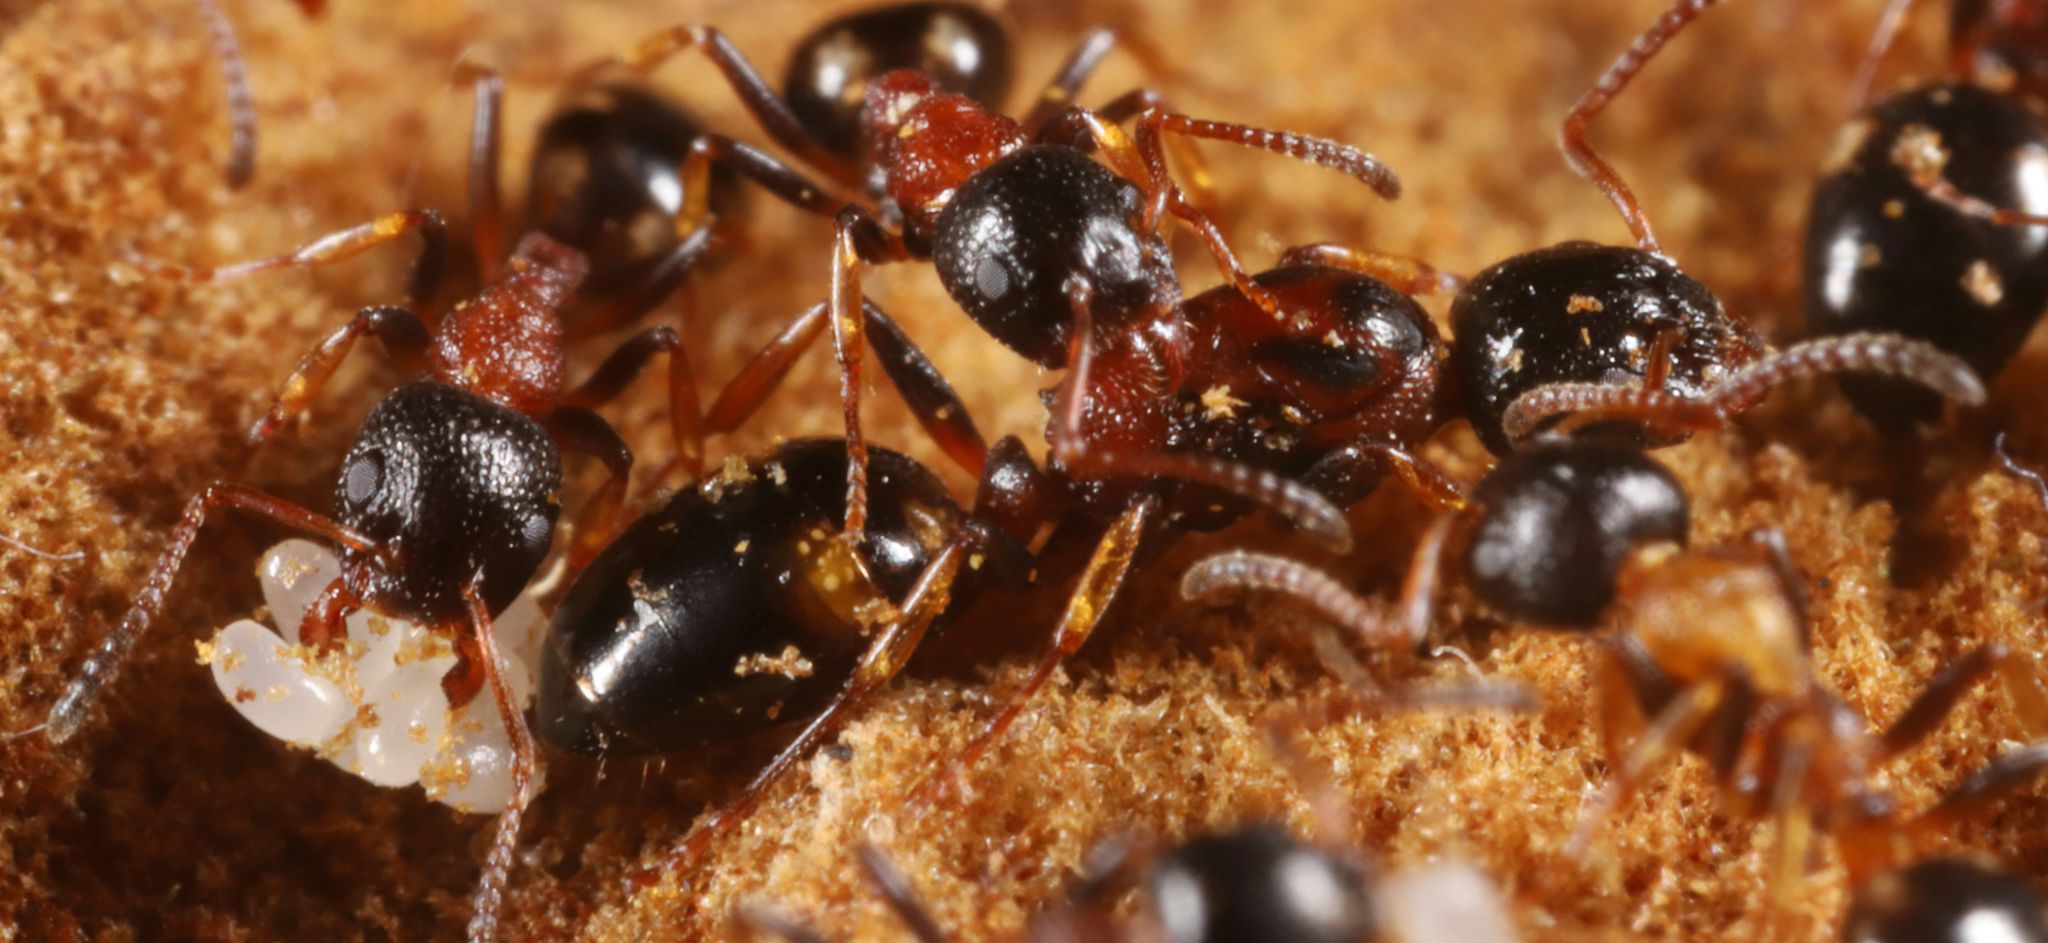 Le formiche sono “insetti nomici”? Un contributo all’etologia della normatività